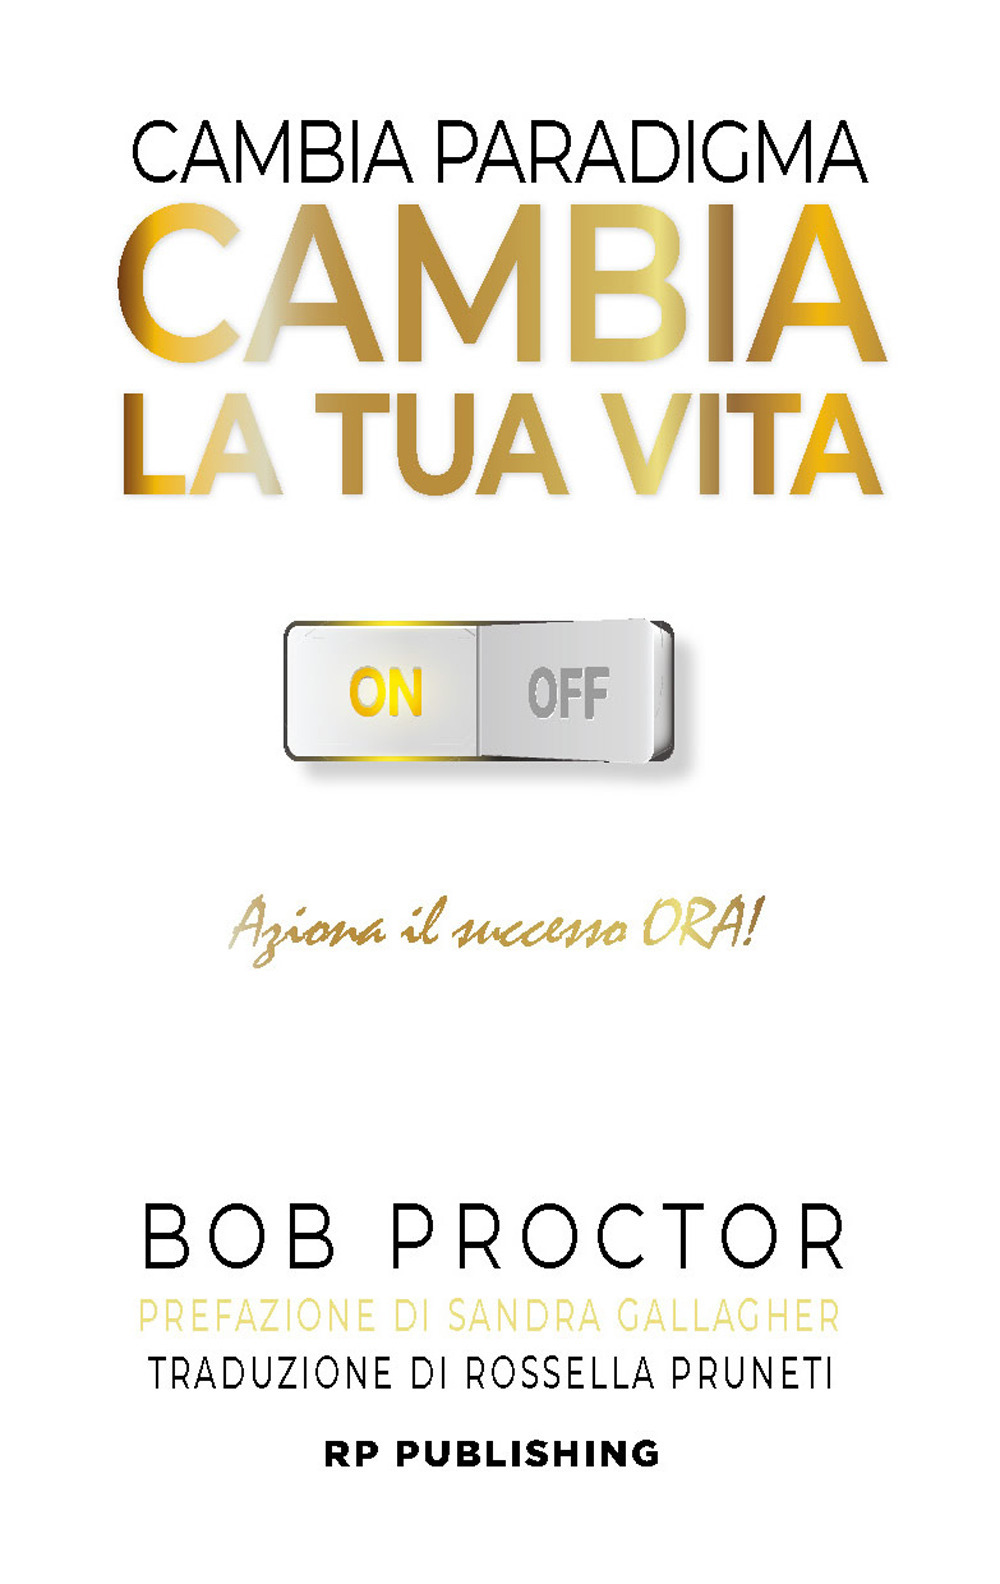 Libri Bob Proctor - Cambia Paradigma. Cambia La Tua Vita. Aziona Il Successo Ora! NUOVO SIGILLATO, EDIZIONE DEL 11/10/2021 SUBITO DISPONIBILE